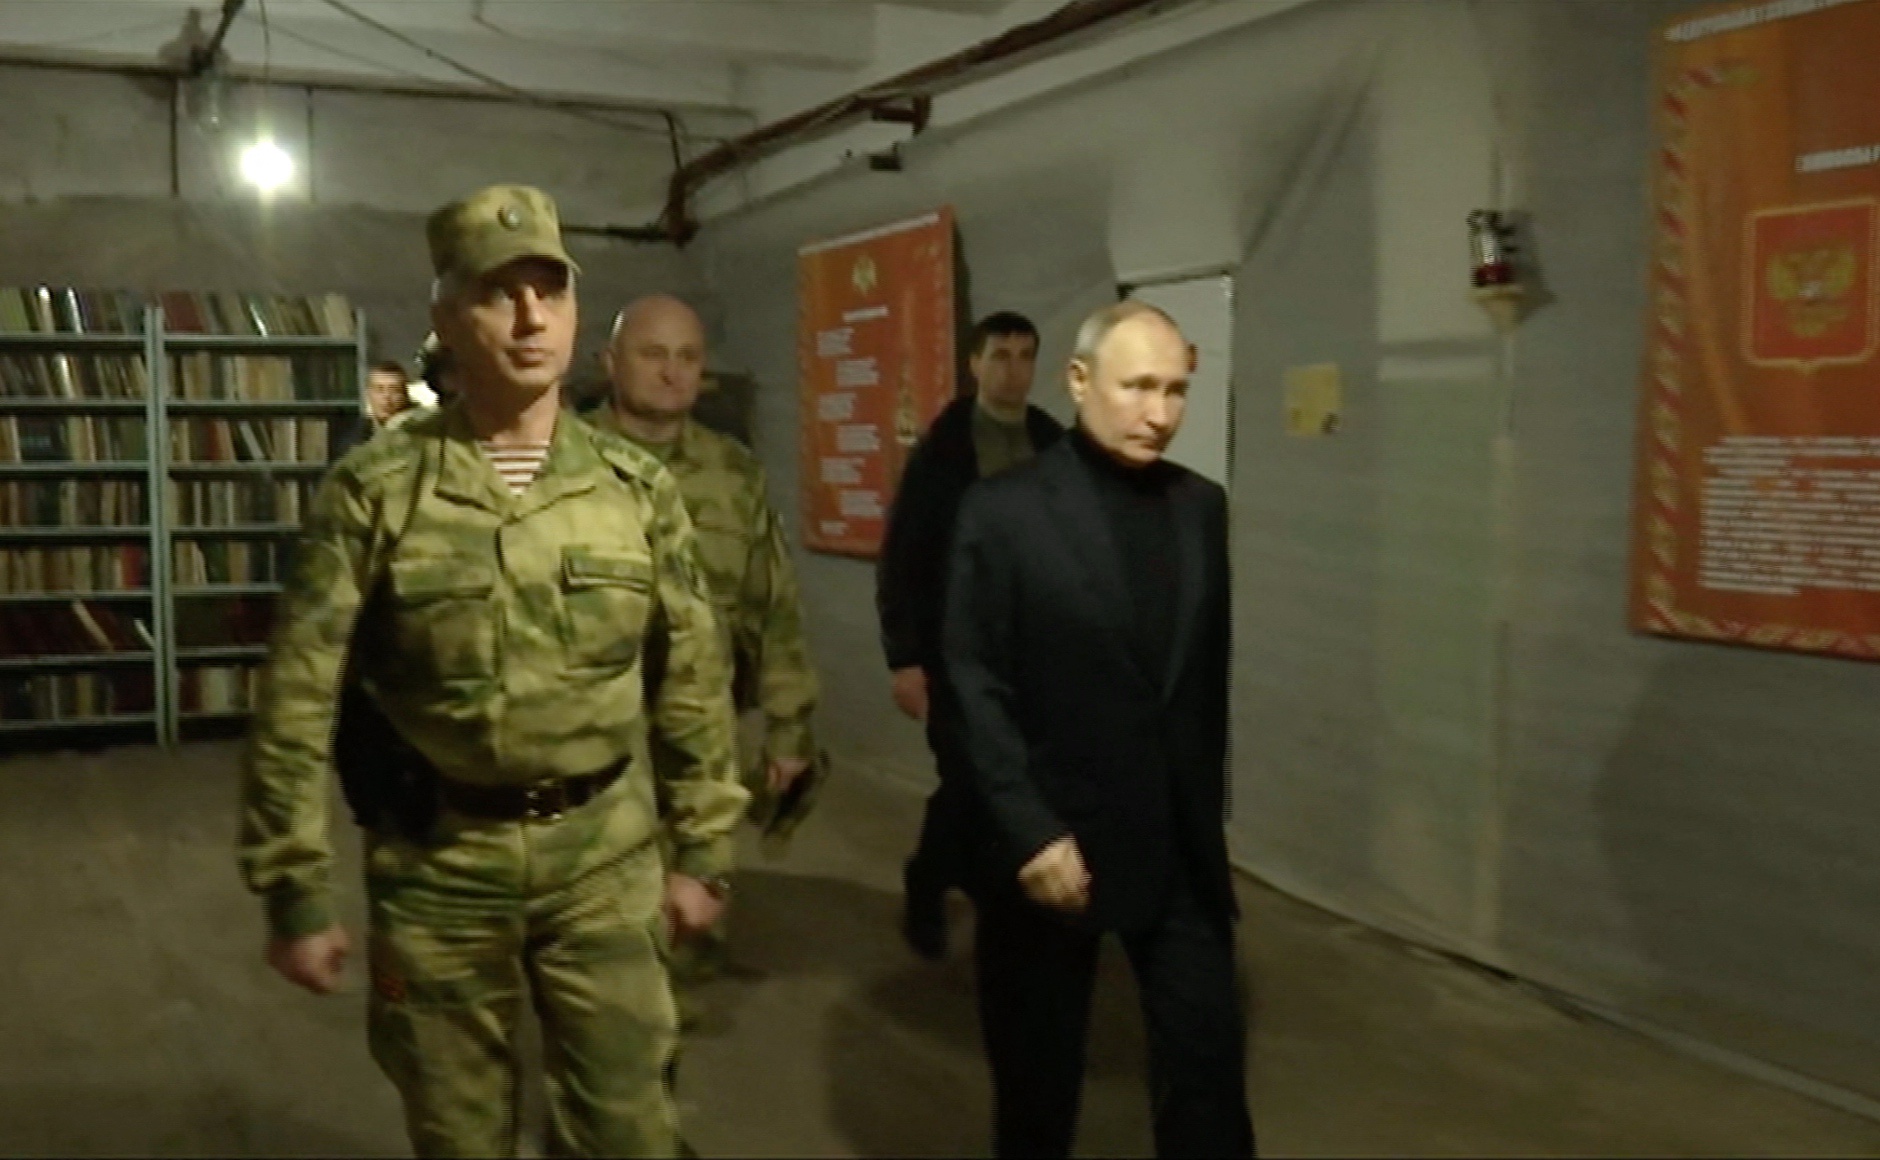 Immagini del presidente russo Vladimir Putin in visita a Luhansk.  Secondo quanto riferito, i leader occidentali si stanno preparando per una guerra in cui il leader russo utilizzerà 